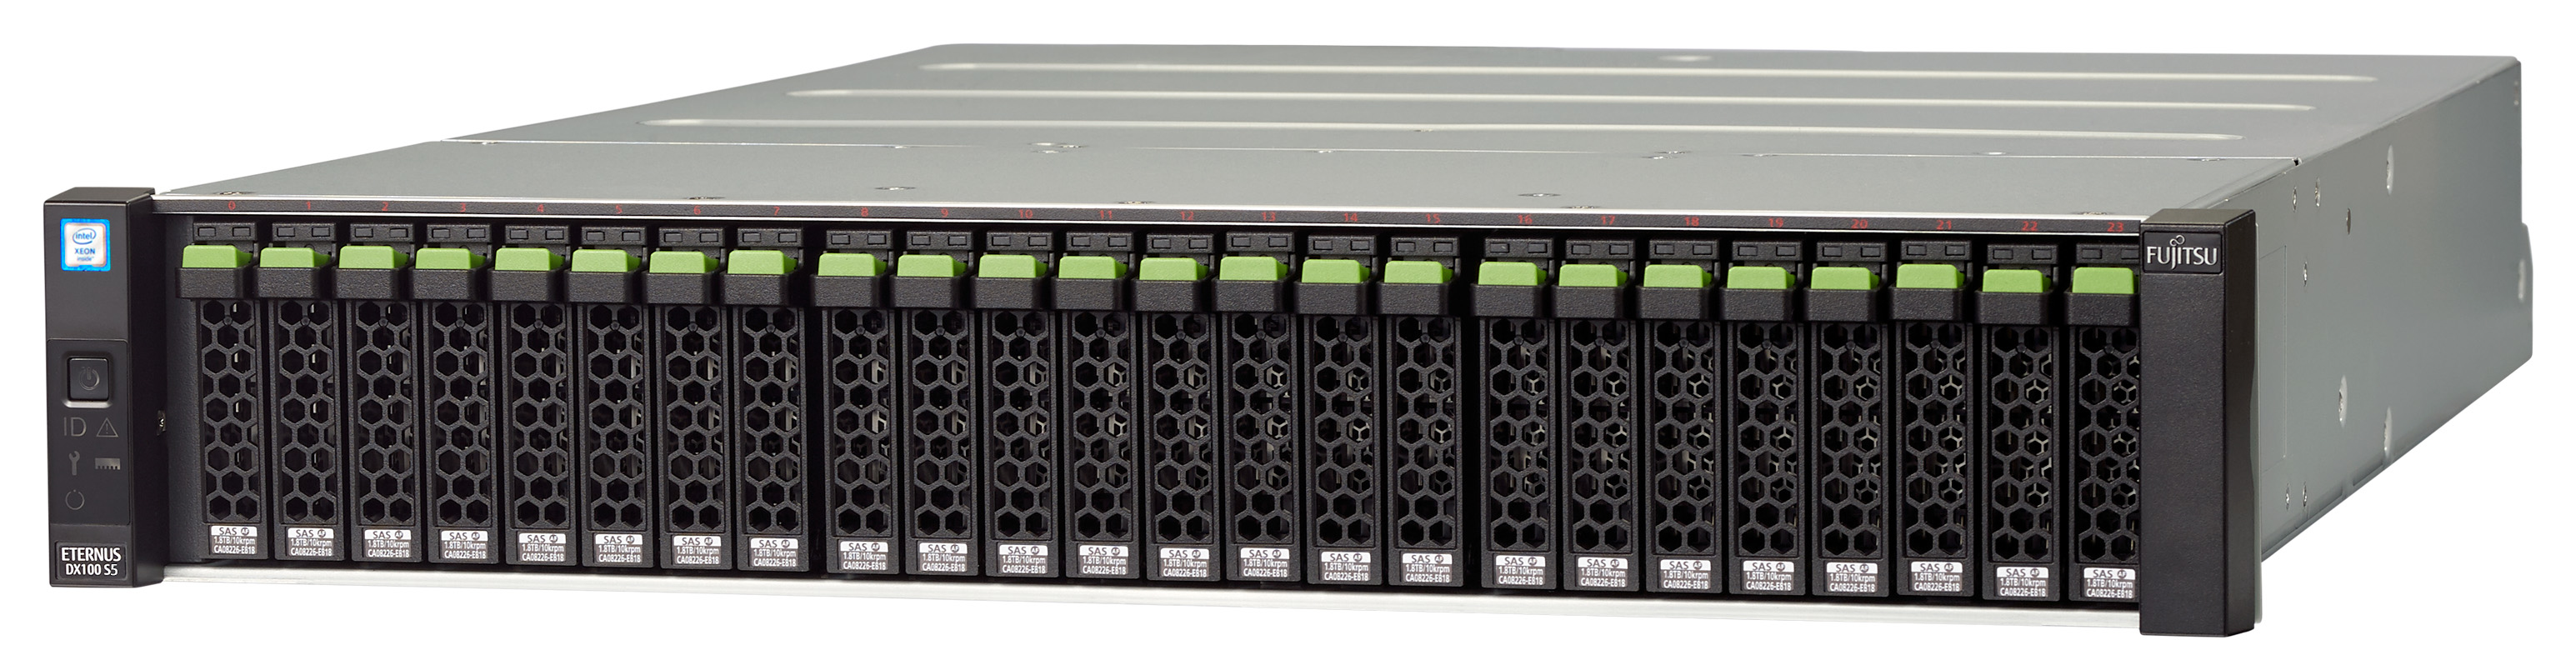 Fujitsu ETERNUS DX100 S5 hårddiskar 21,6 TB Rack (2U) Svart